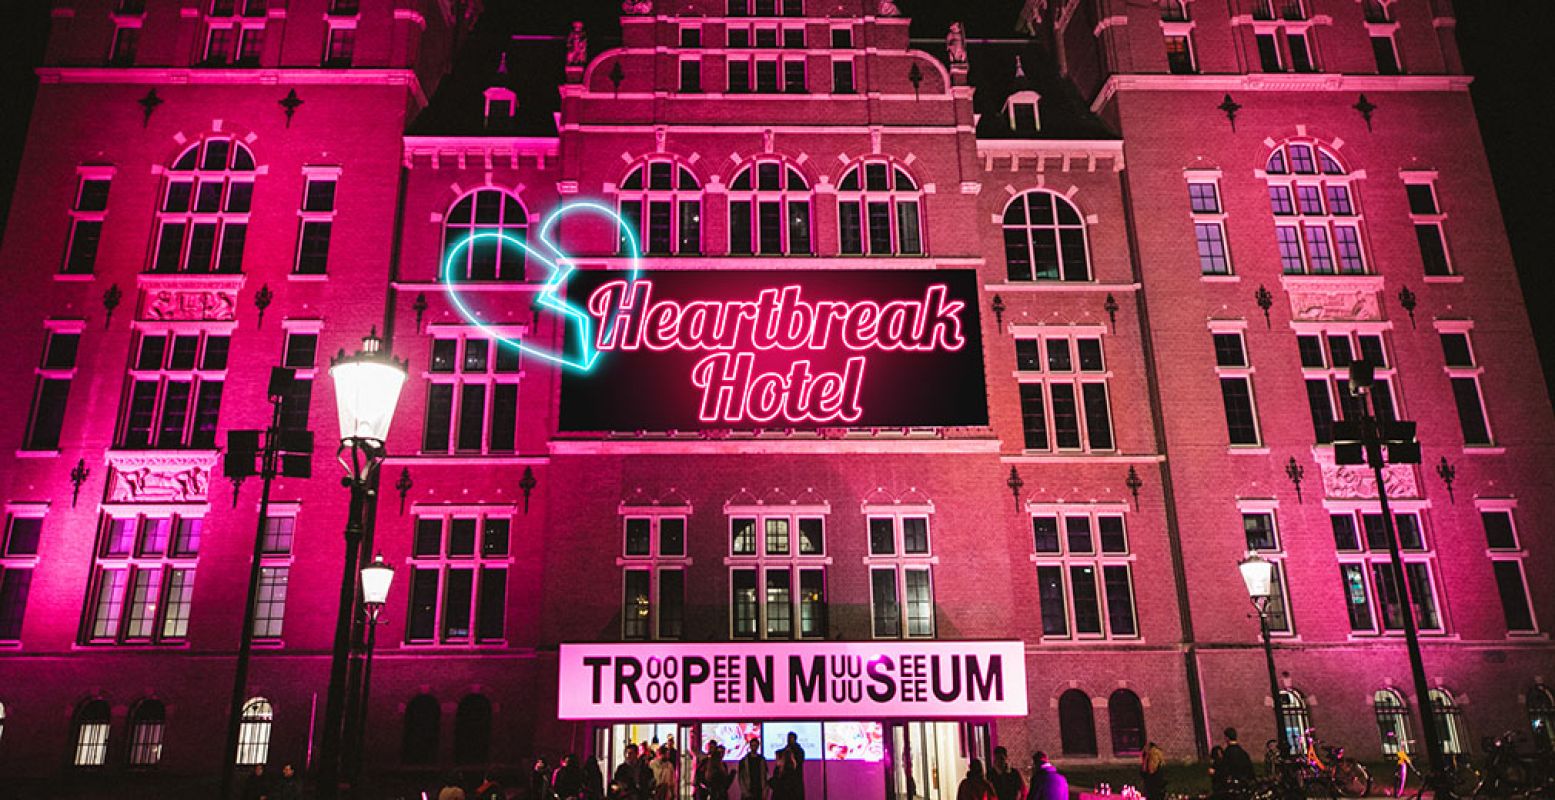 Het Tropenmuseum in Amsterdam verandert dit weekend in het Heartbreak Hotel en helpt je door je liefdesverdriet heen. Foto: Tropenmuseum.